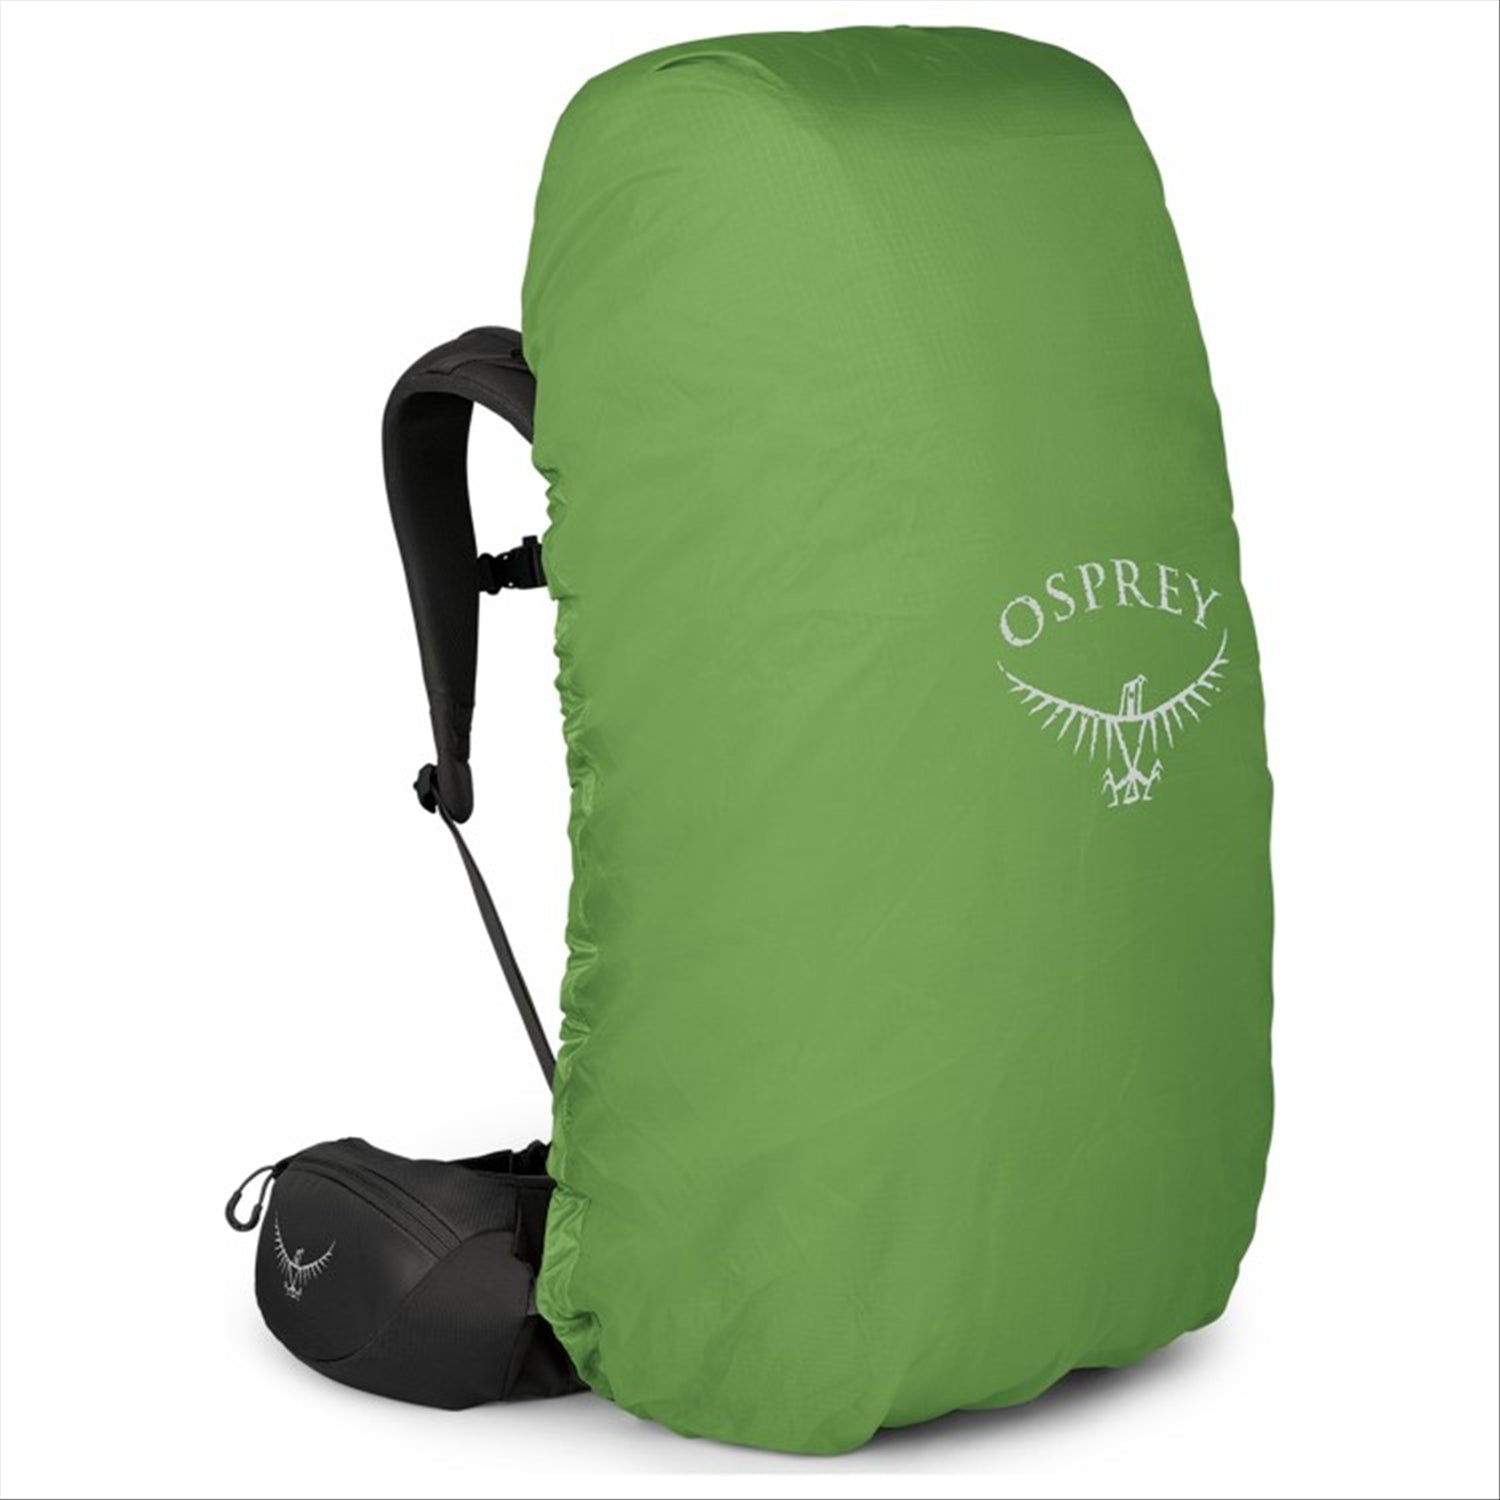 Osprey Osprey Volt 65 EF Extended Fit Men's Tramping Backpack